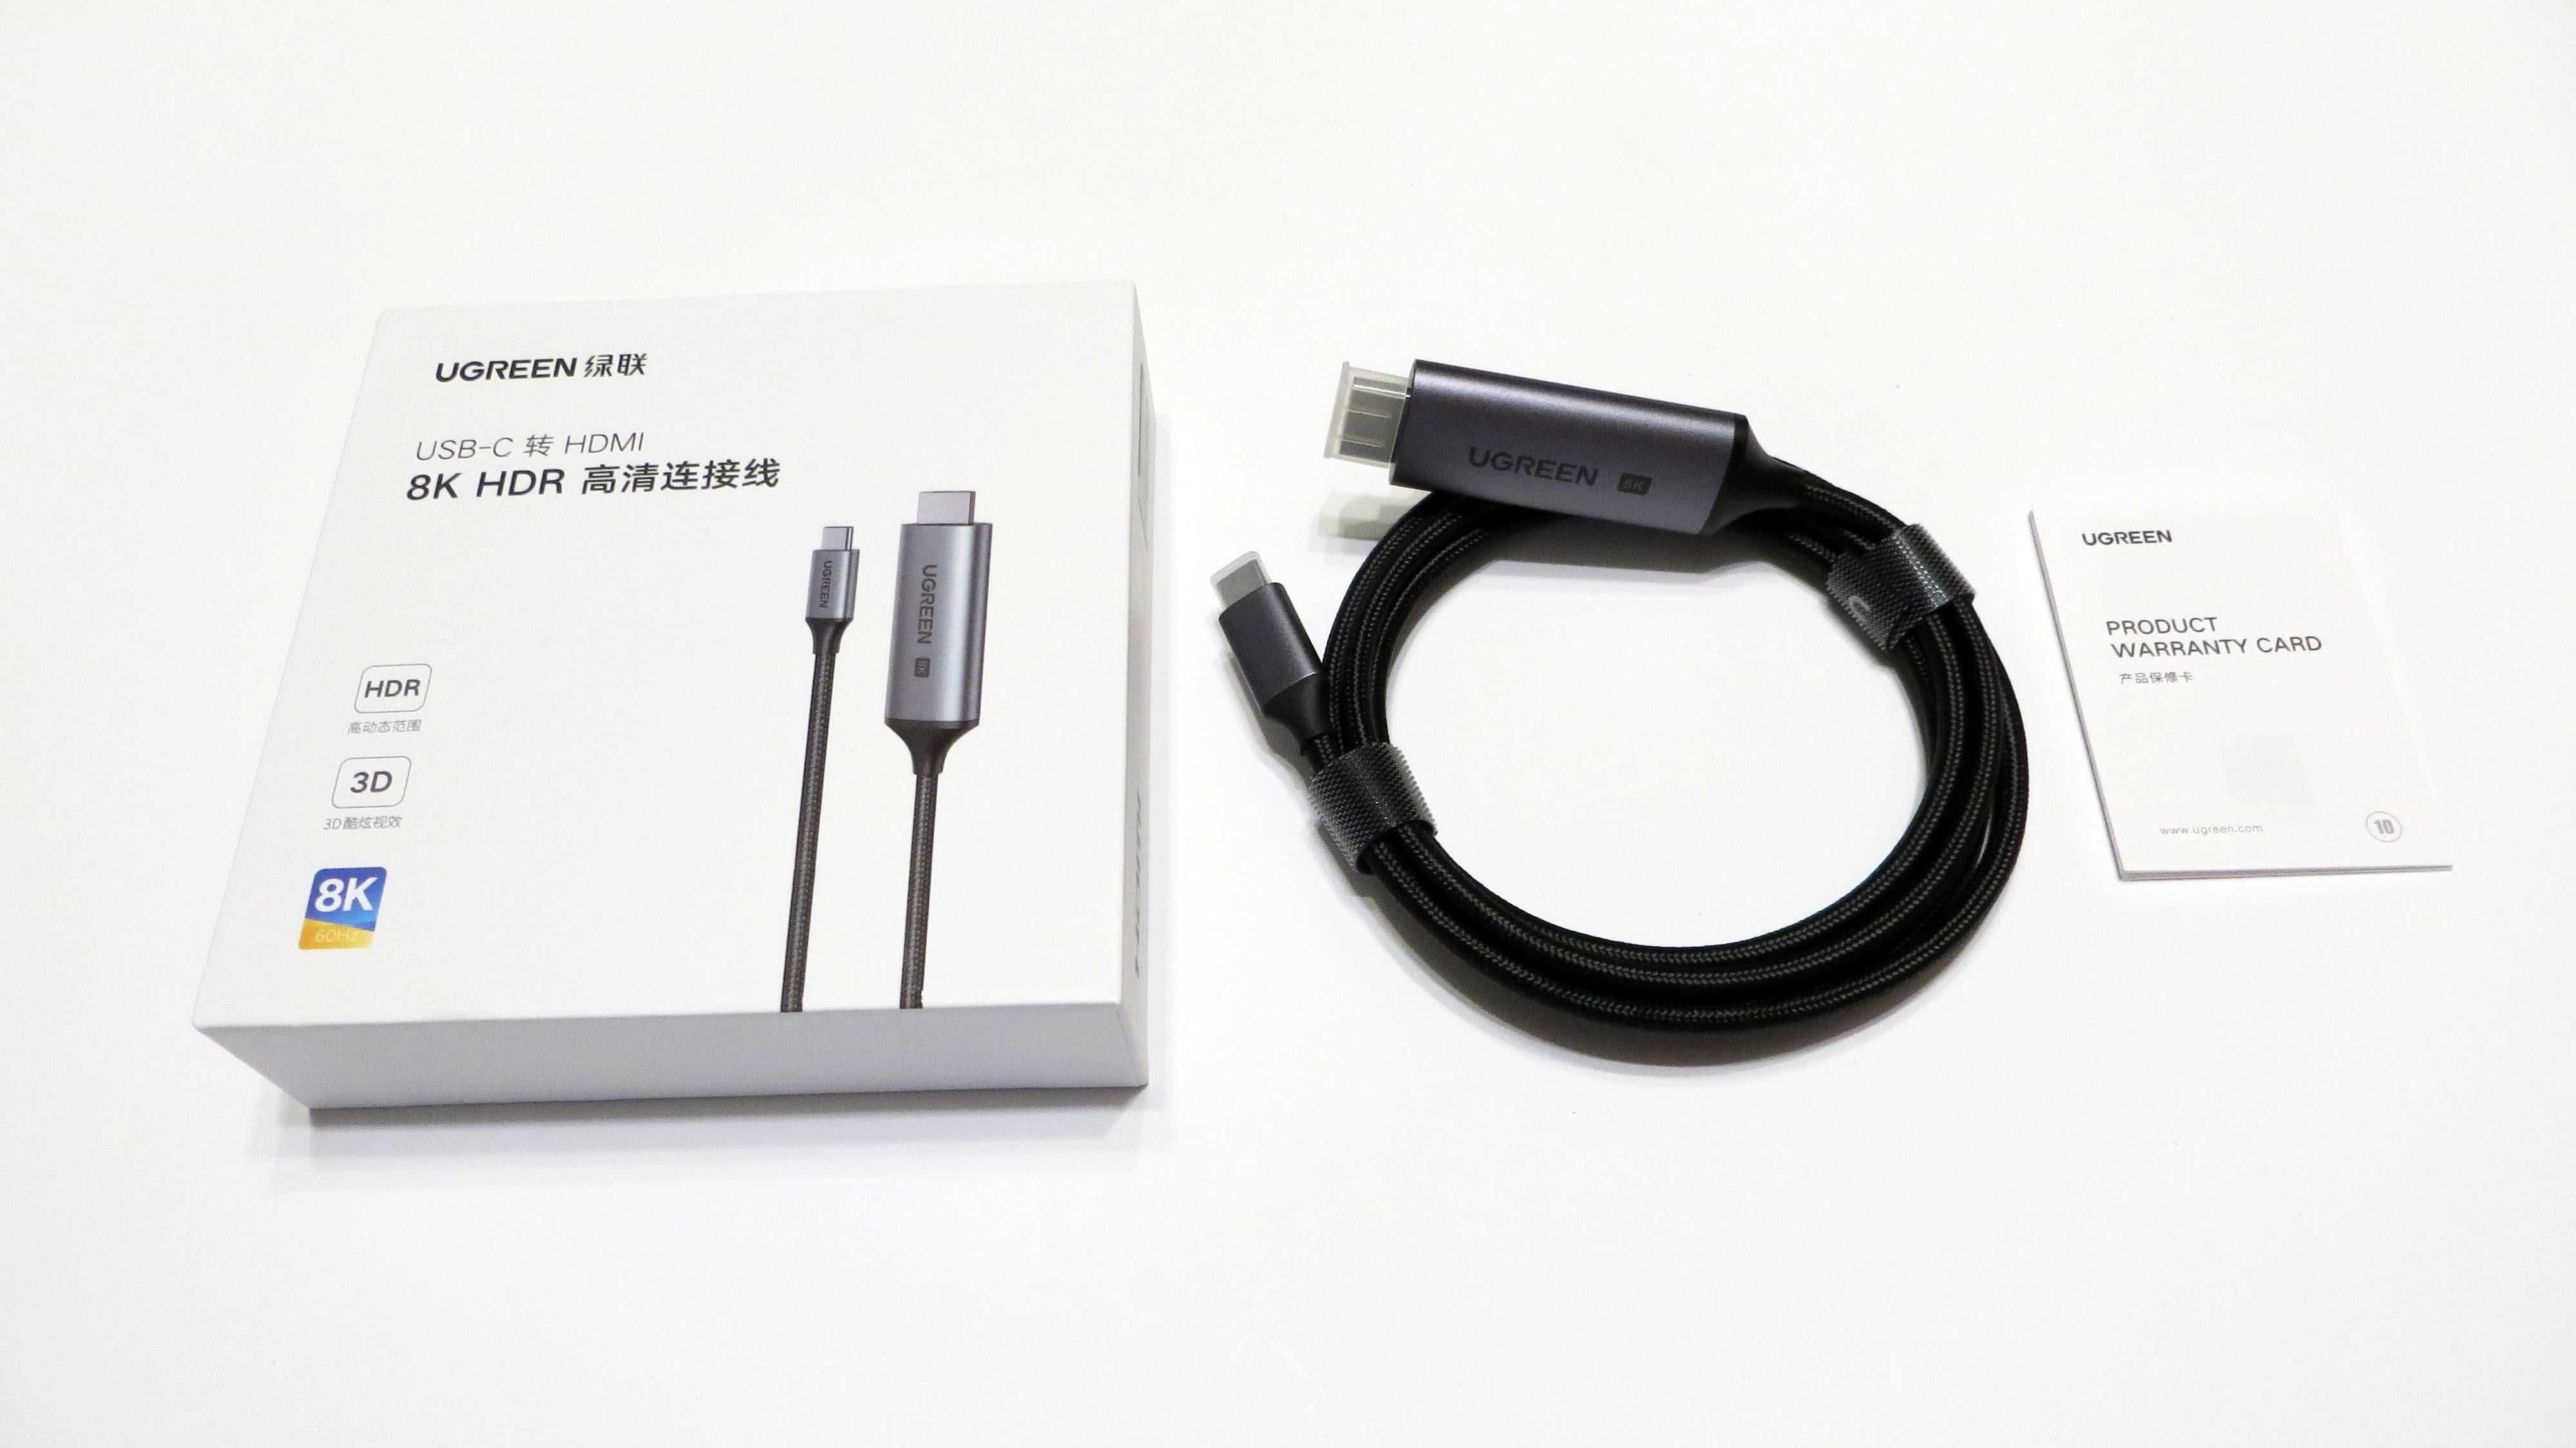 Кабель USB-C HDMI 2.1 240Гц 165Гц 144Гц 120Гц HDR Ugreen для Макбук